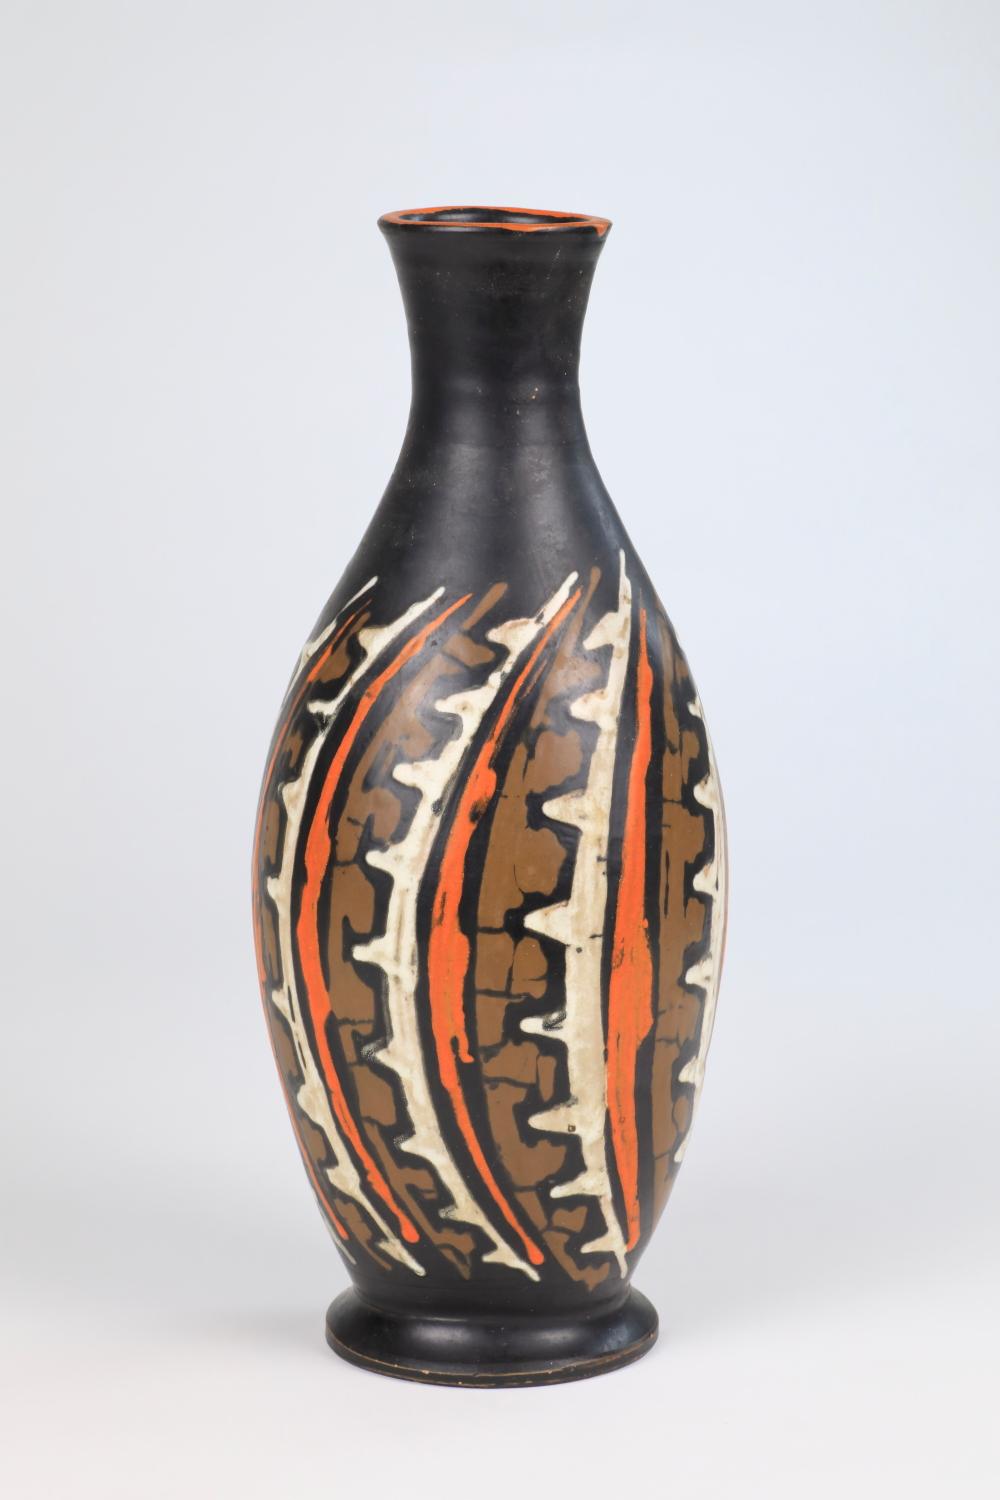 Les œuvres en céramique de Livia Gorka se distinguent par leur caractère unique et spécial. Elles portent la marque de sa maîtrise artisanale, de son profond attachement à la nature et de son approche novatrice de la poterie.

Au cœur de son style